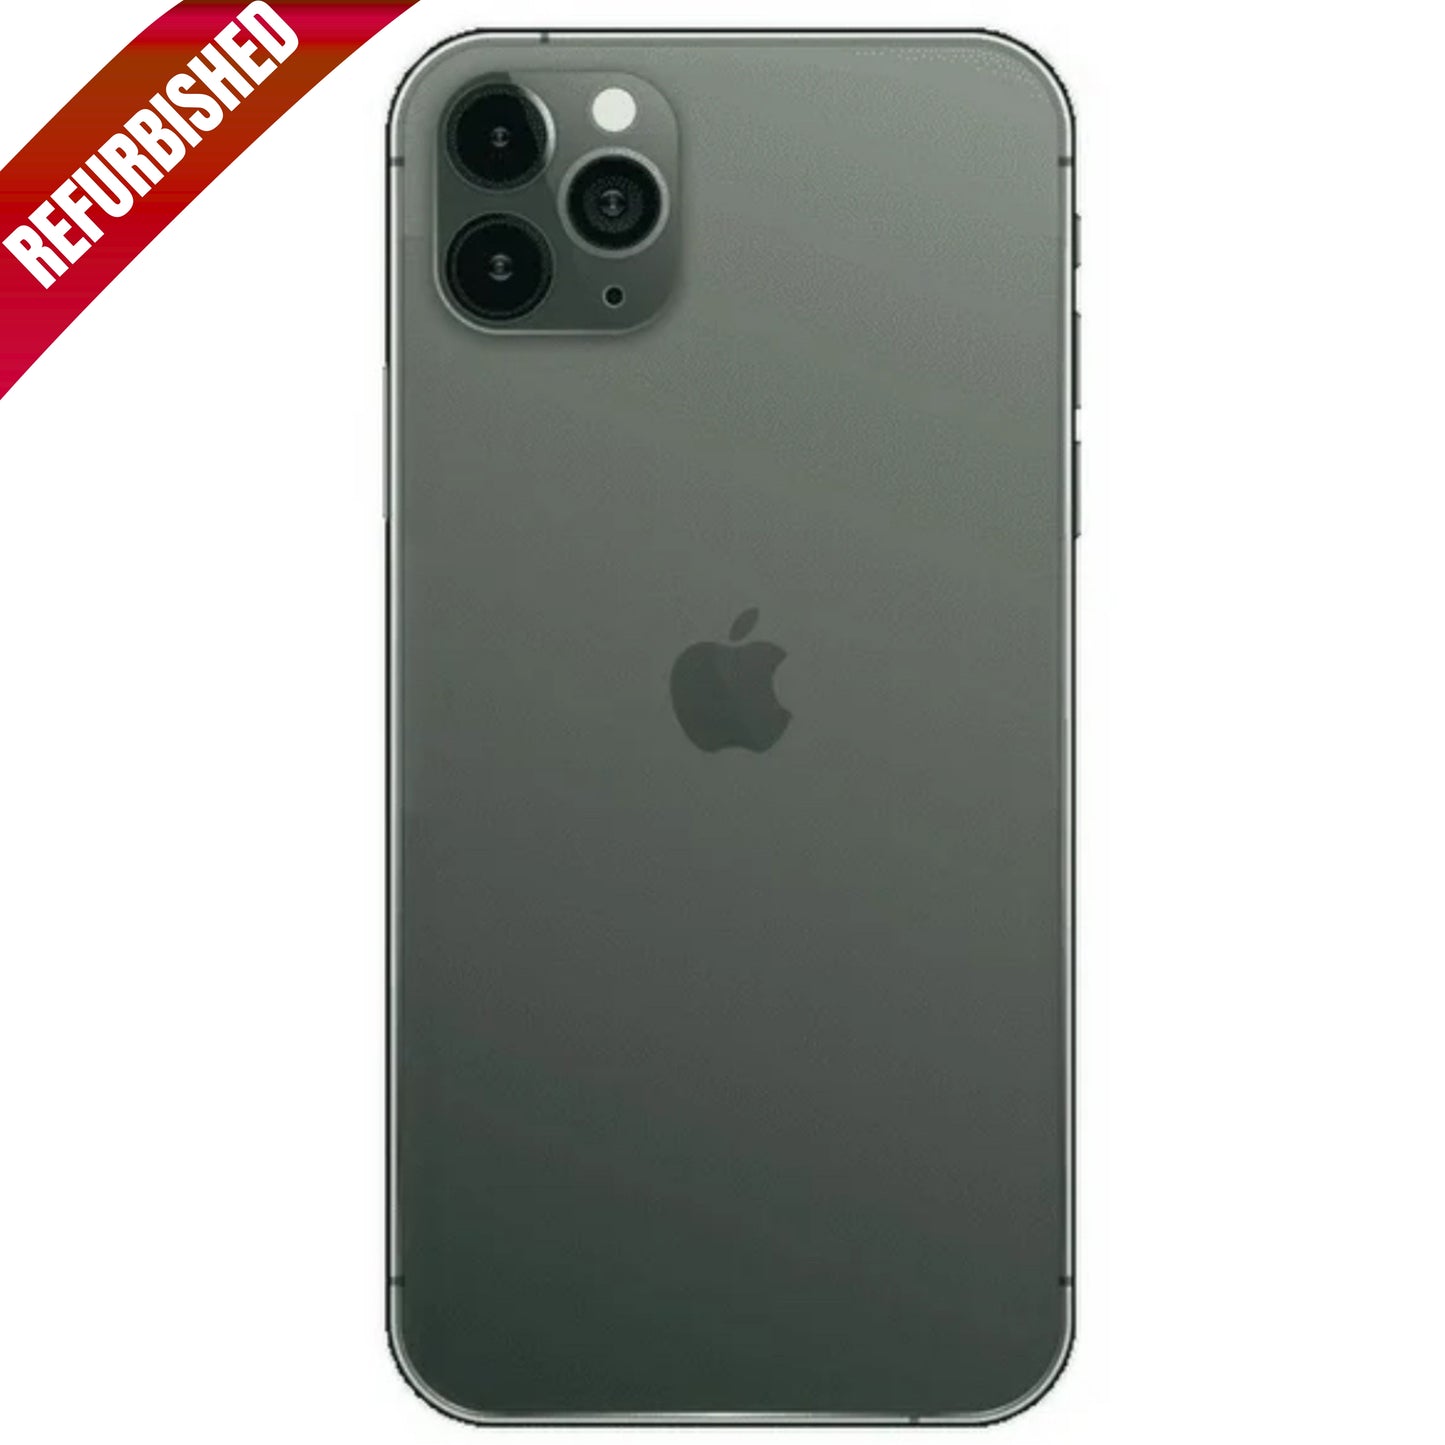 iPhone 11 Pro Max Verde Medianoche 256 GB (Desbloqueado) Reacondicionado